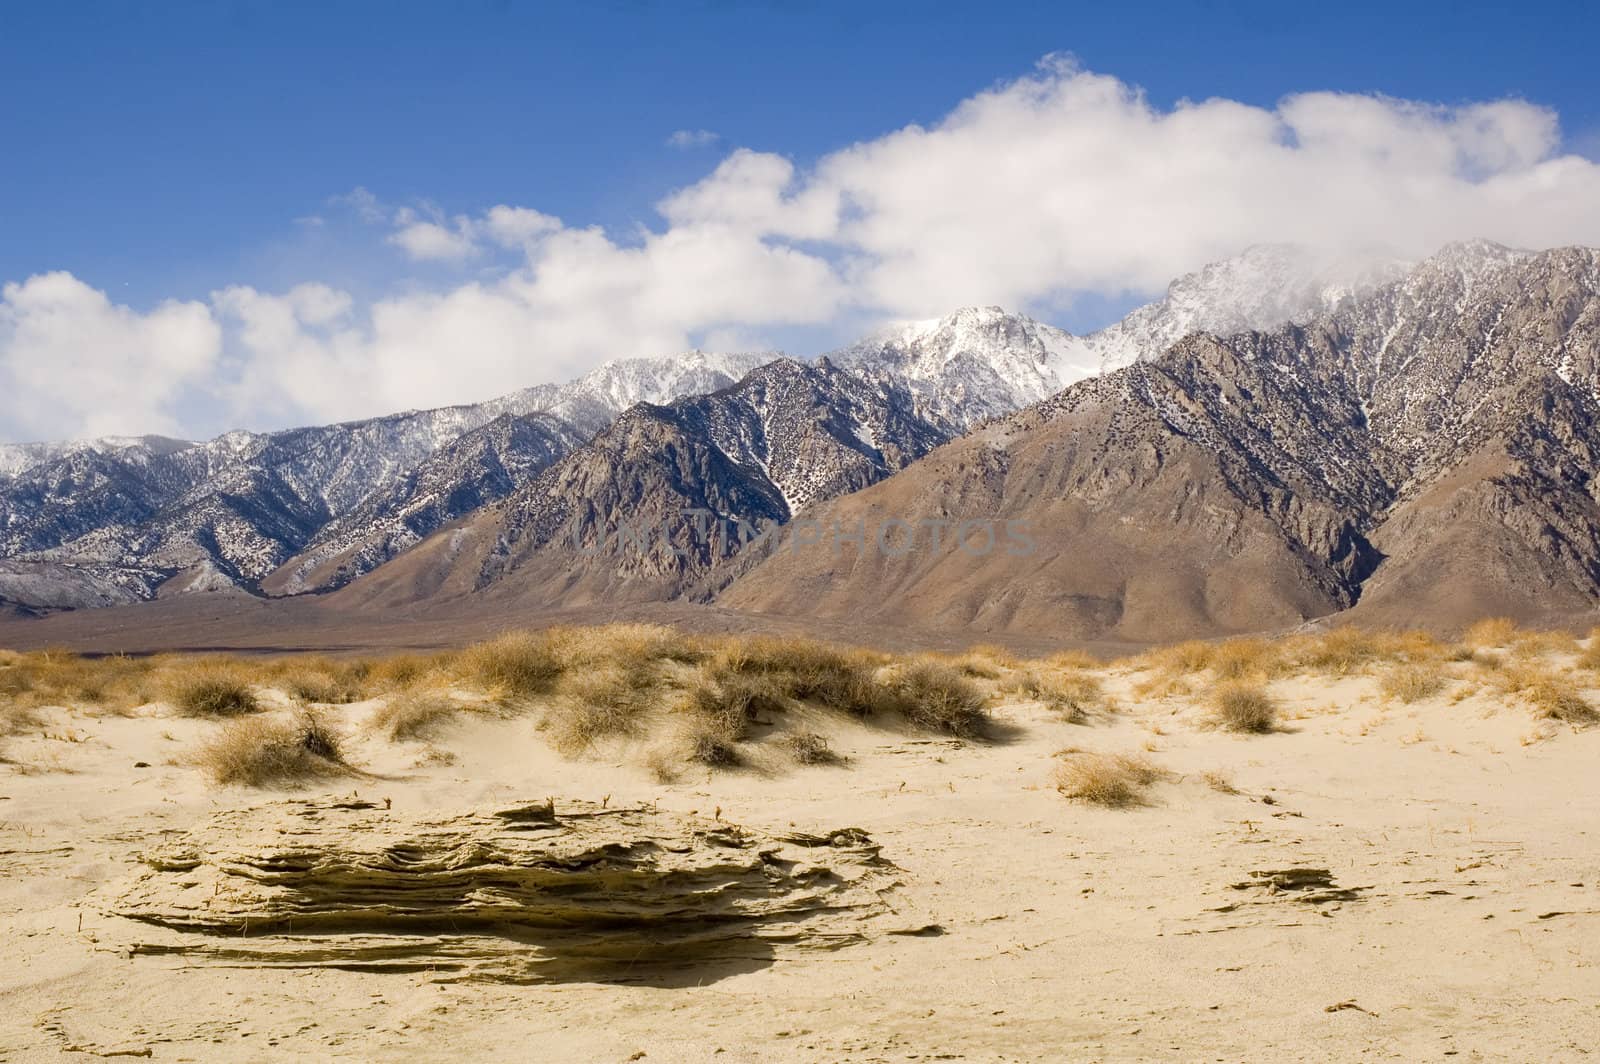 Desert landscape in death valley, CA